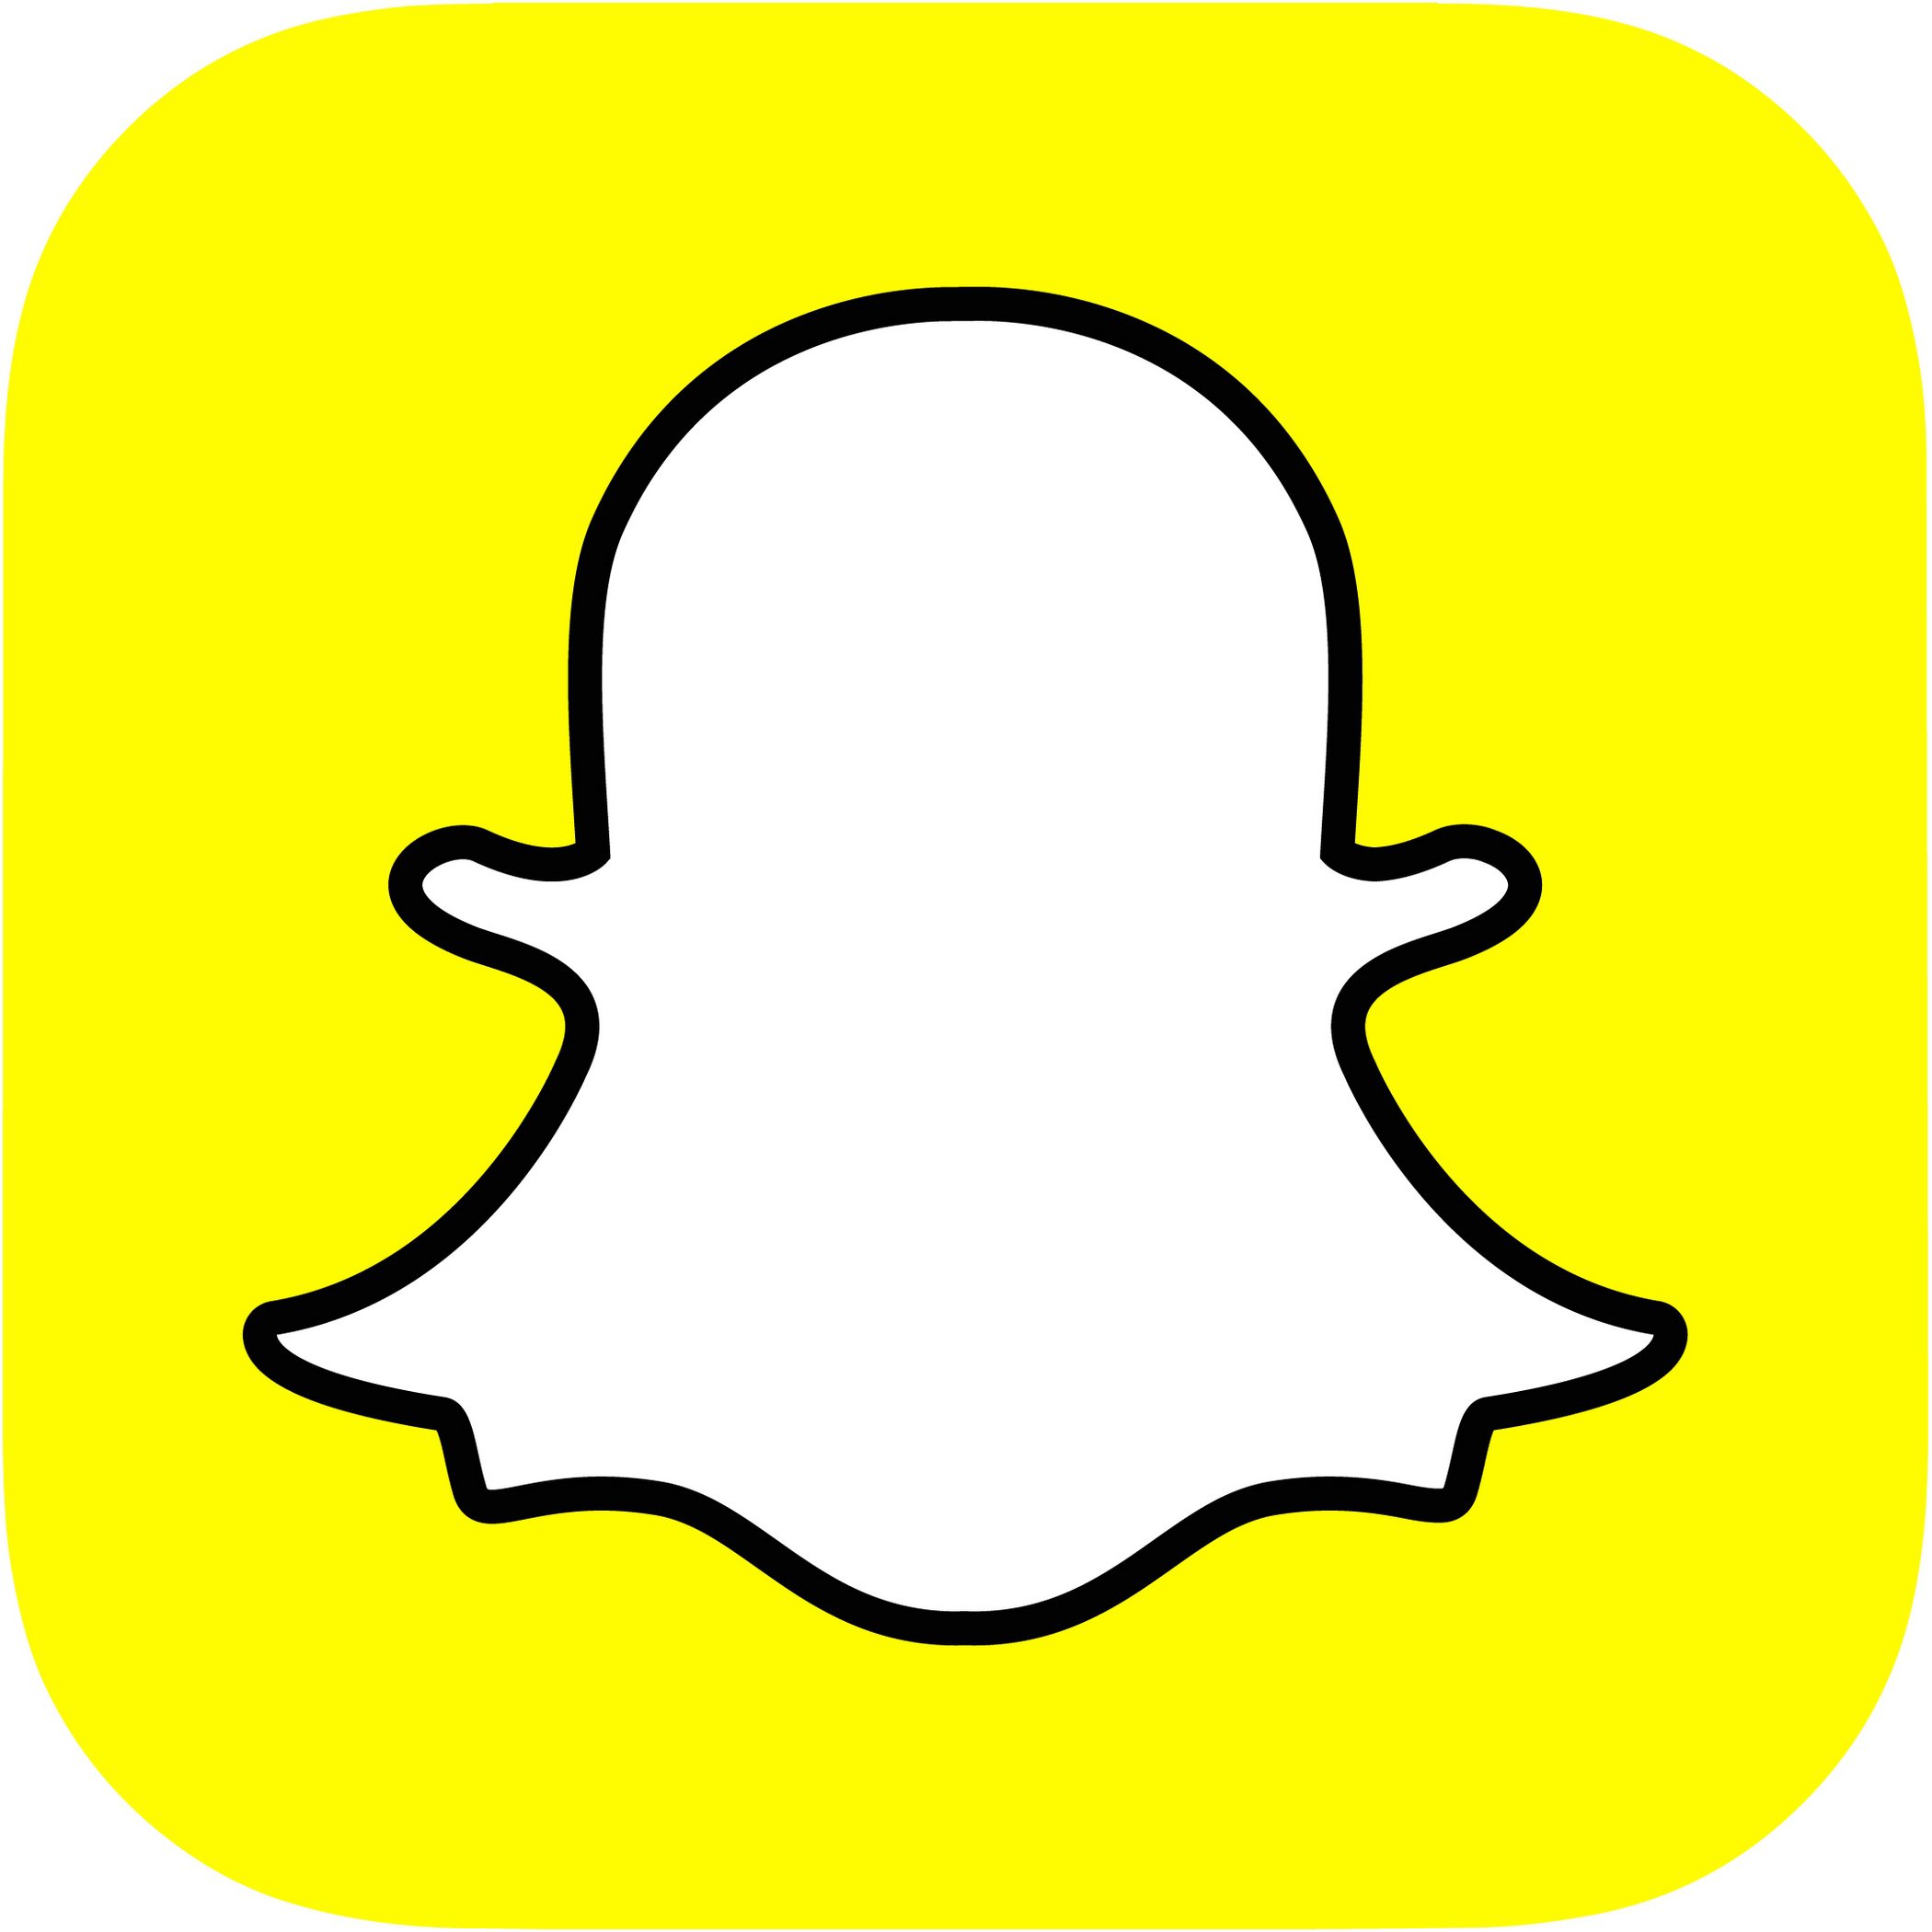 Snapchat testet endlich den dunklen Modus für seine iPhone-App 56